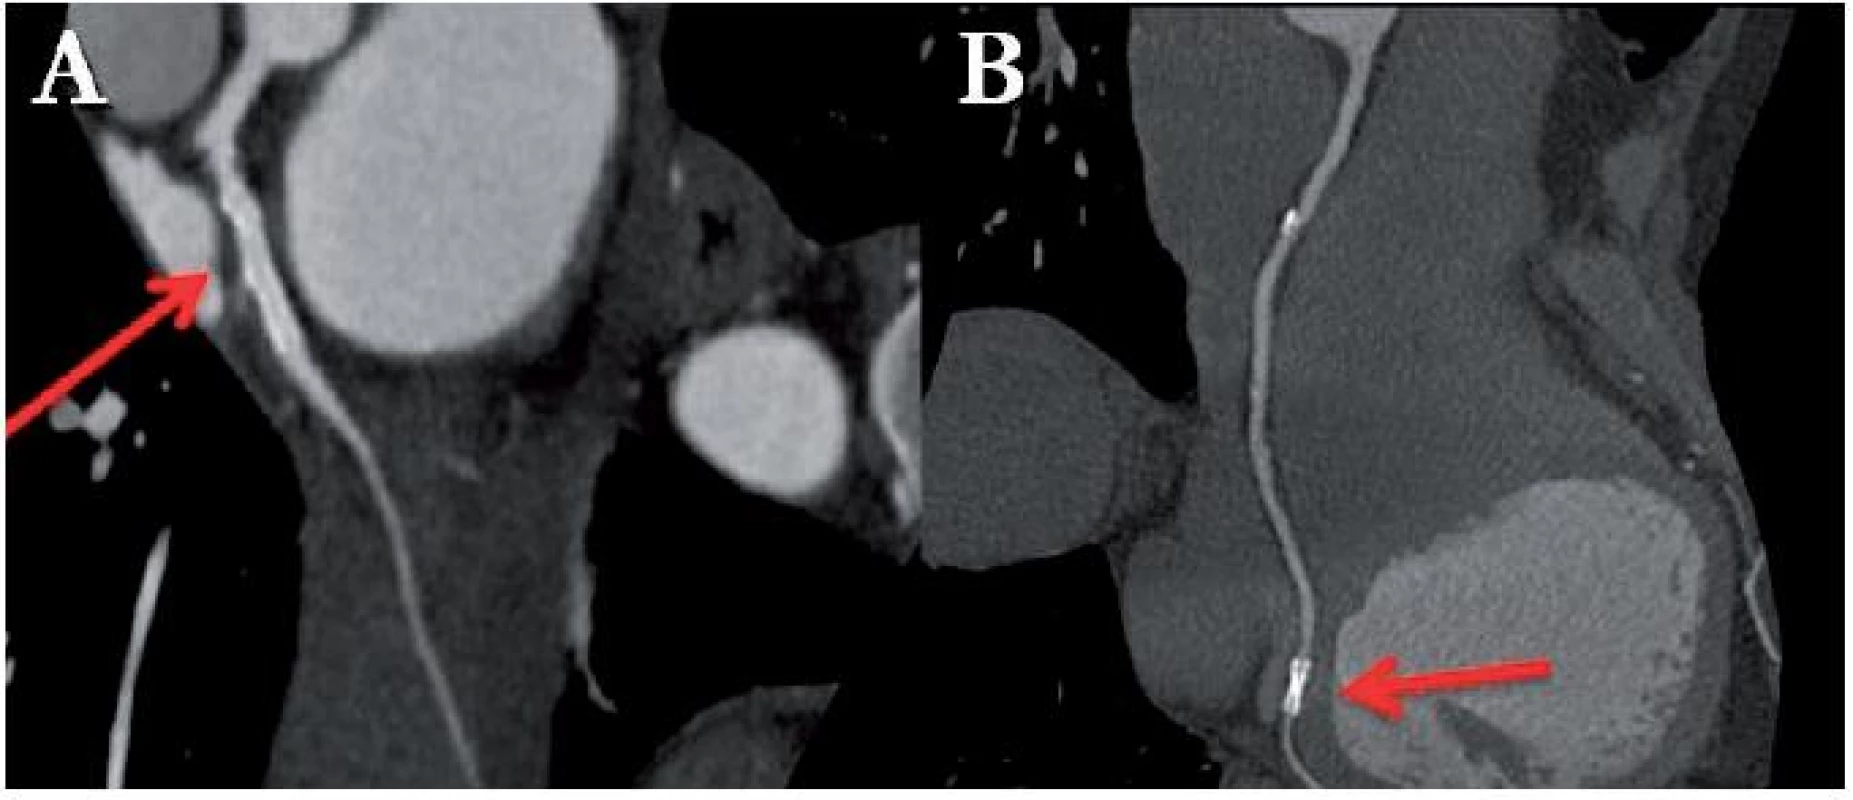 Stent s průměrem 4 mm implantován v proximálním úseku ramus circumflexus, bez známek restenózy (A). Stent s průměrem 2,5 mm implantován do ramus posterolateralis dexter, vyloučit restenózu vzhledem k malému průměru nelze (B).